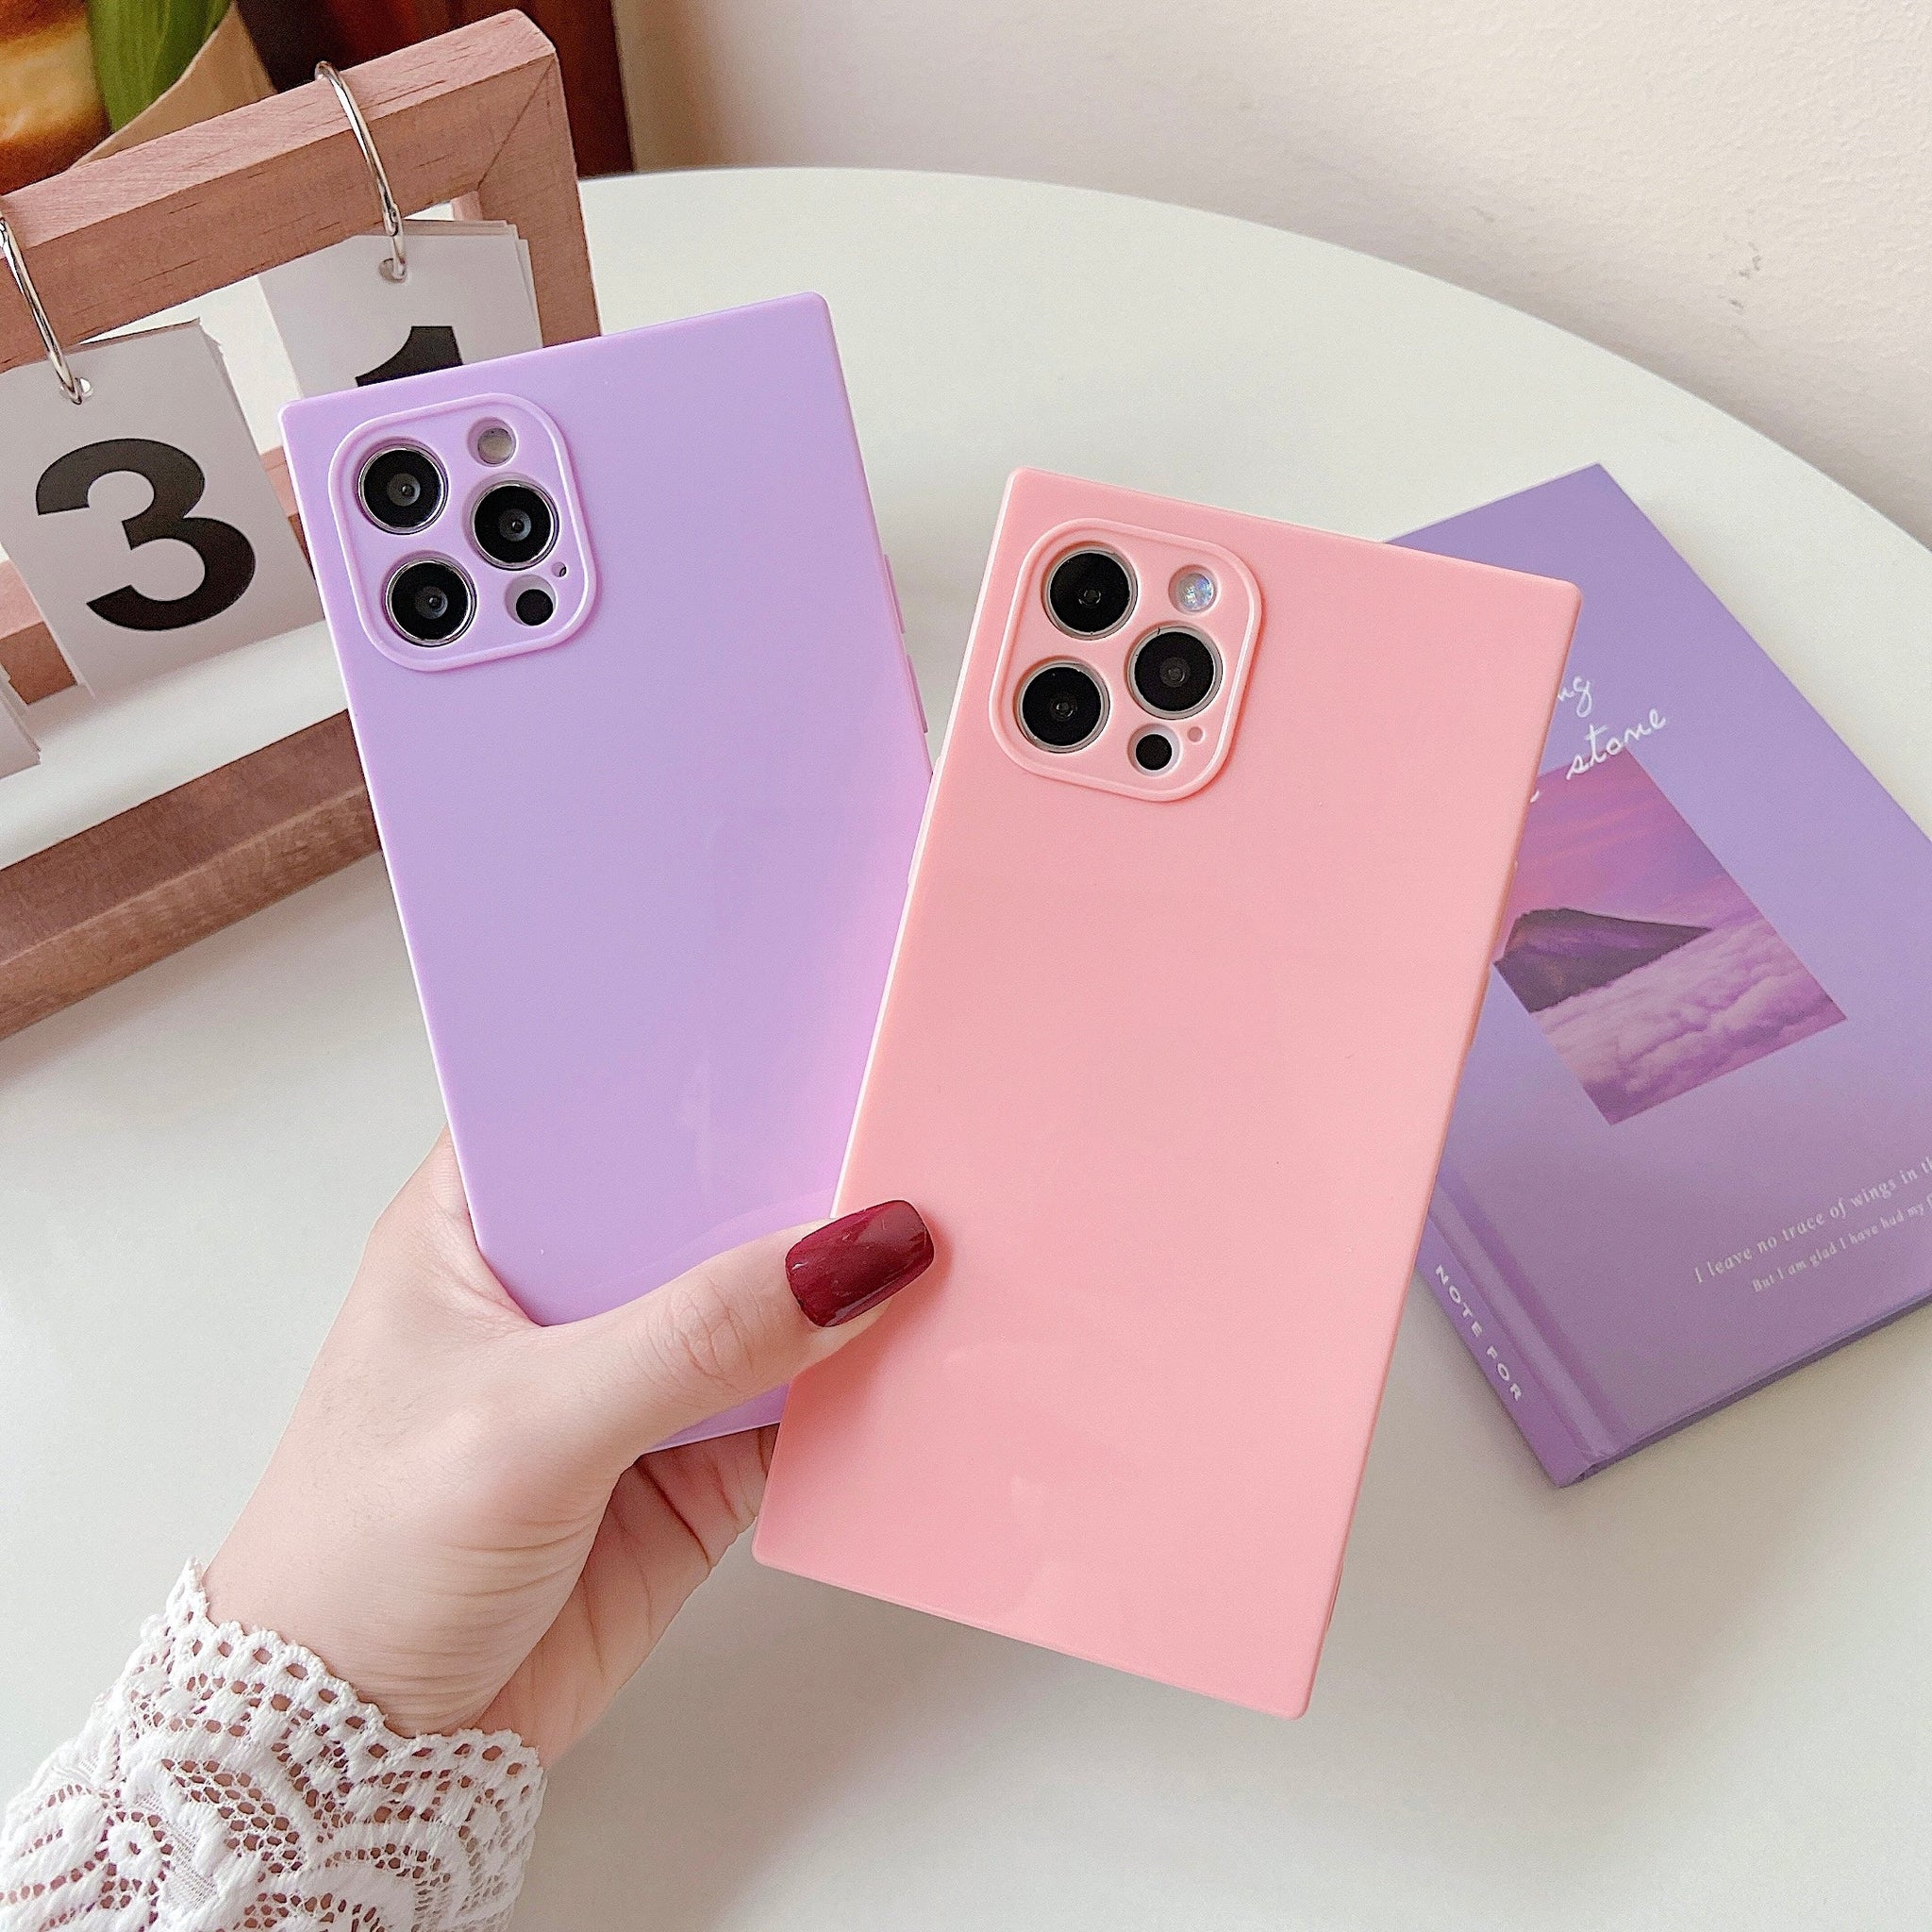 iPhone 11 Pro Case Square Plain Color (Purple)